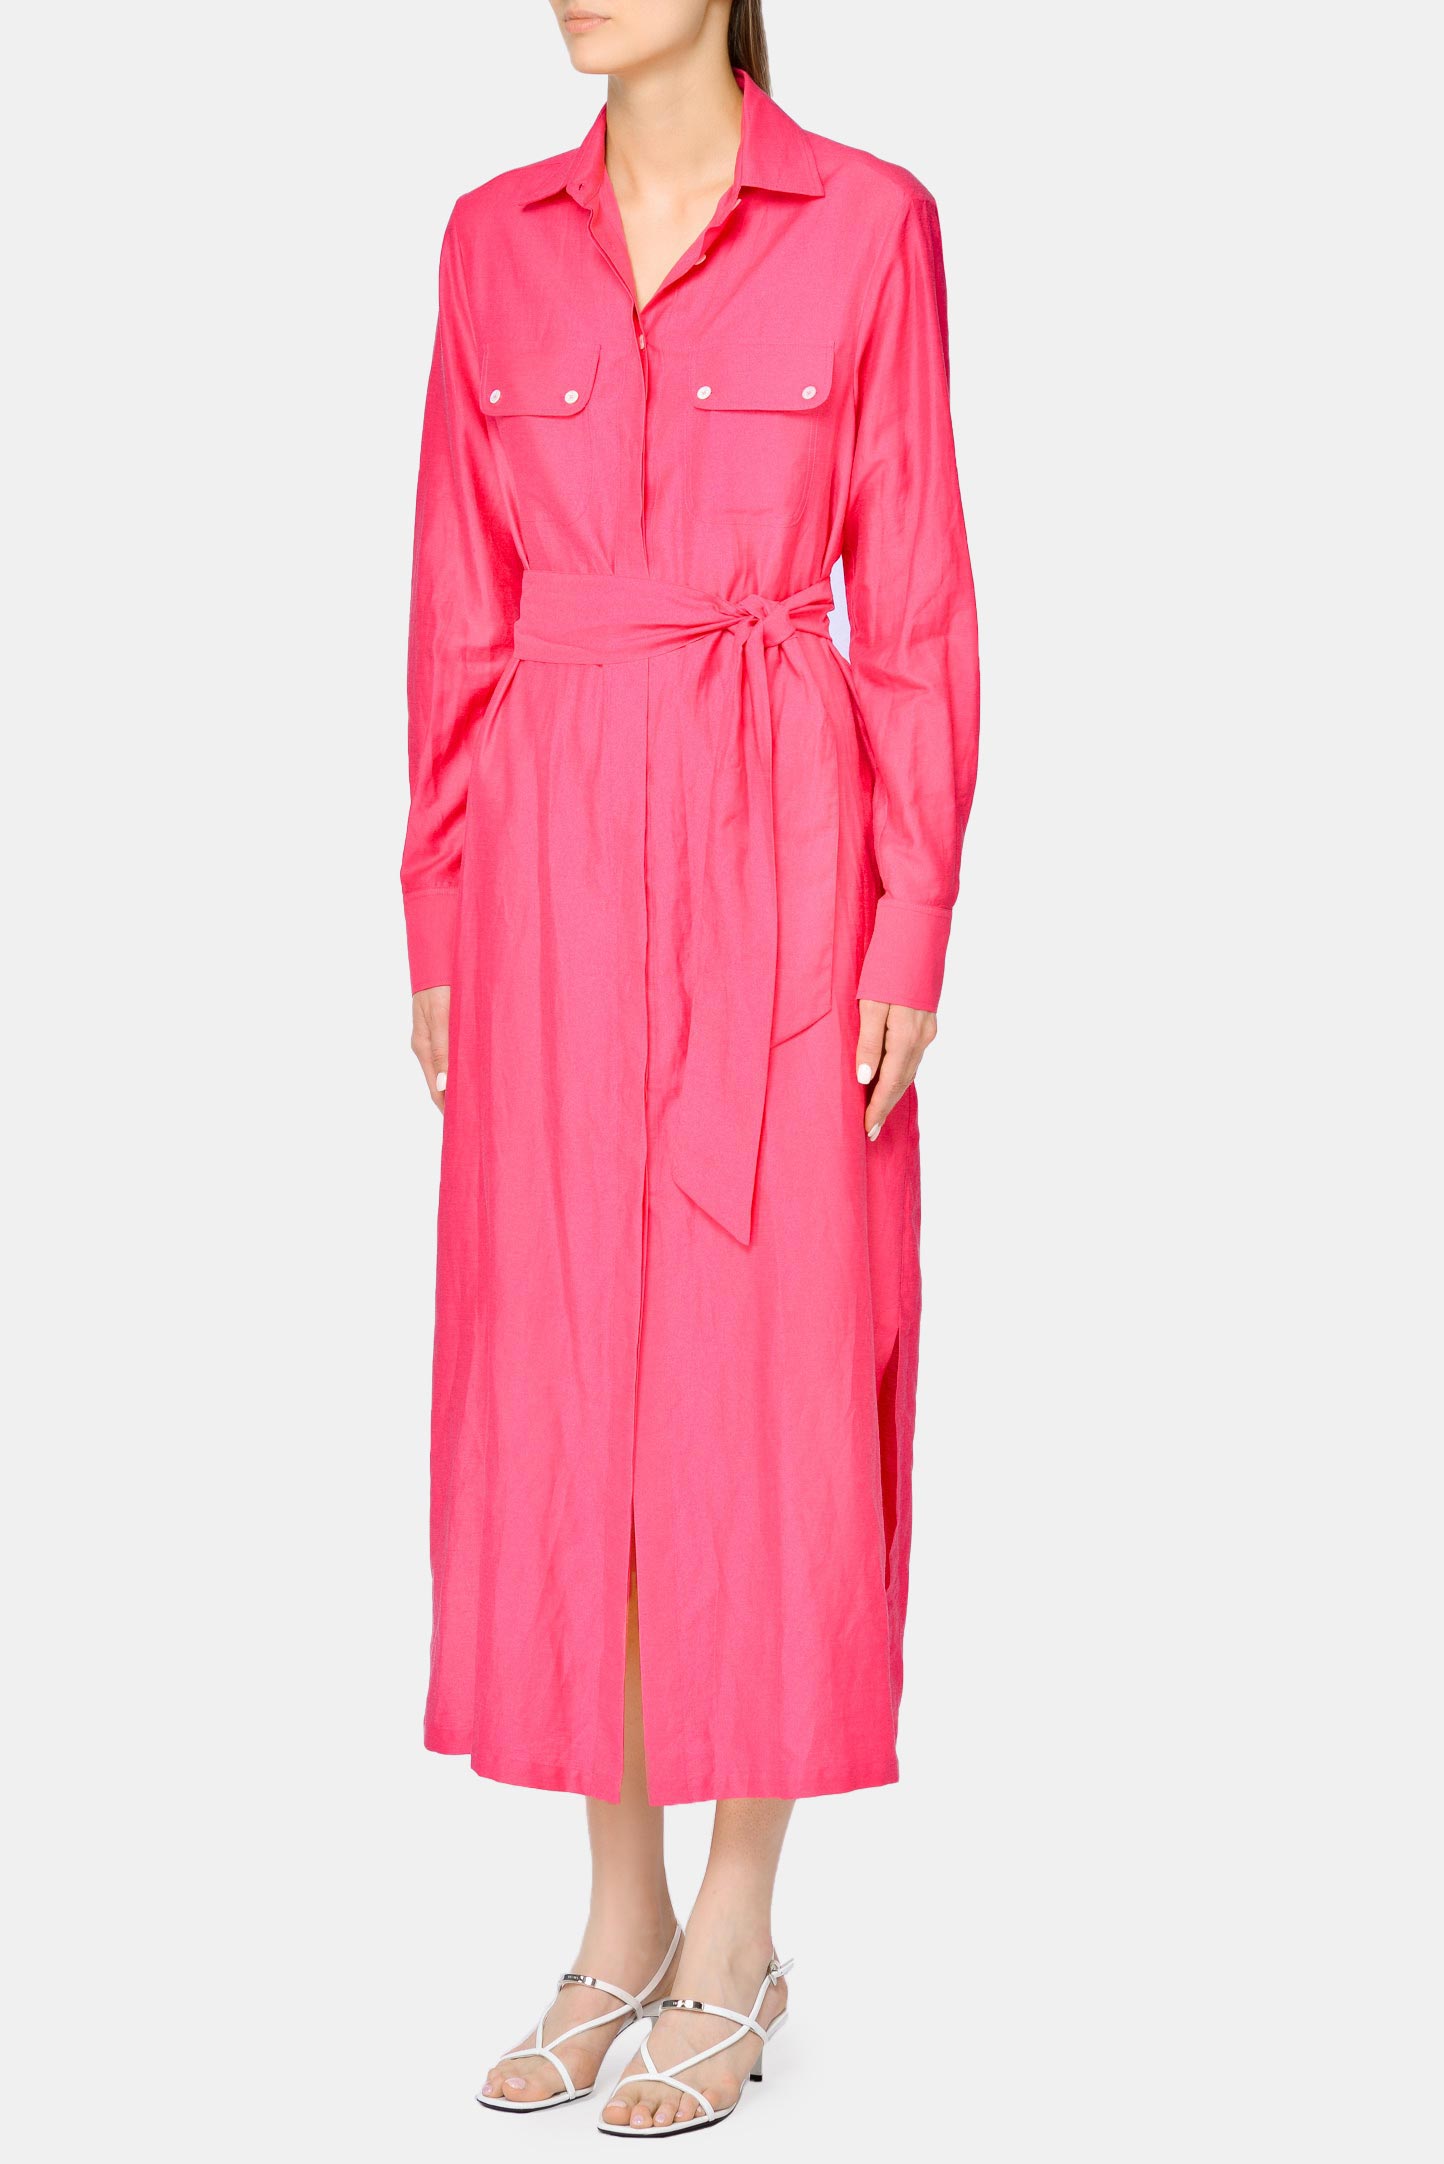 Платье KITON D51381H077240, цвет: Розовый, Женский